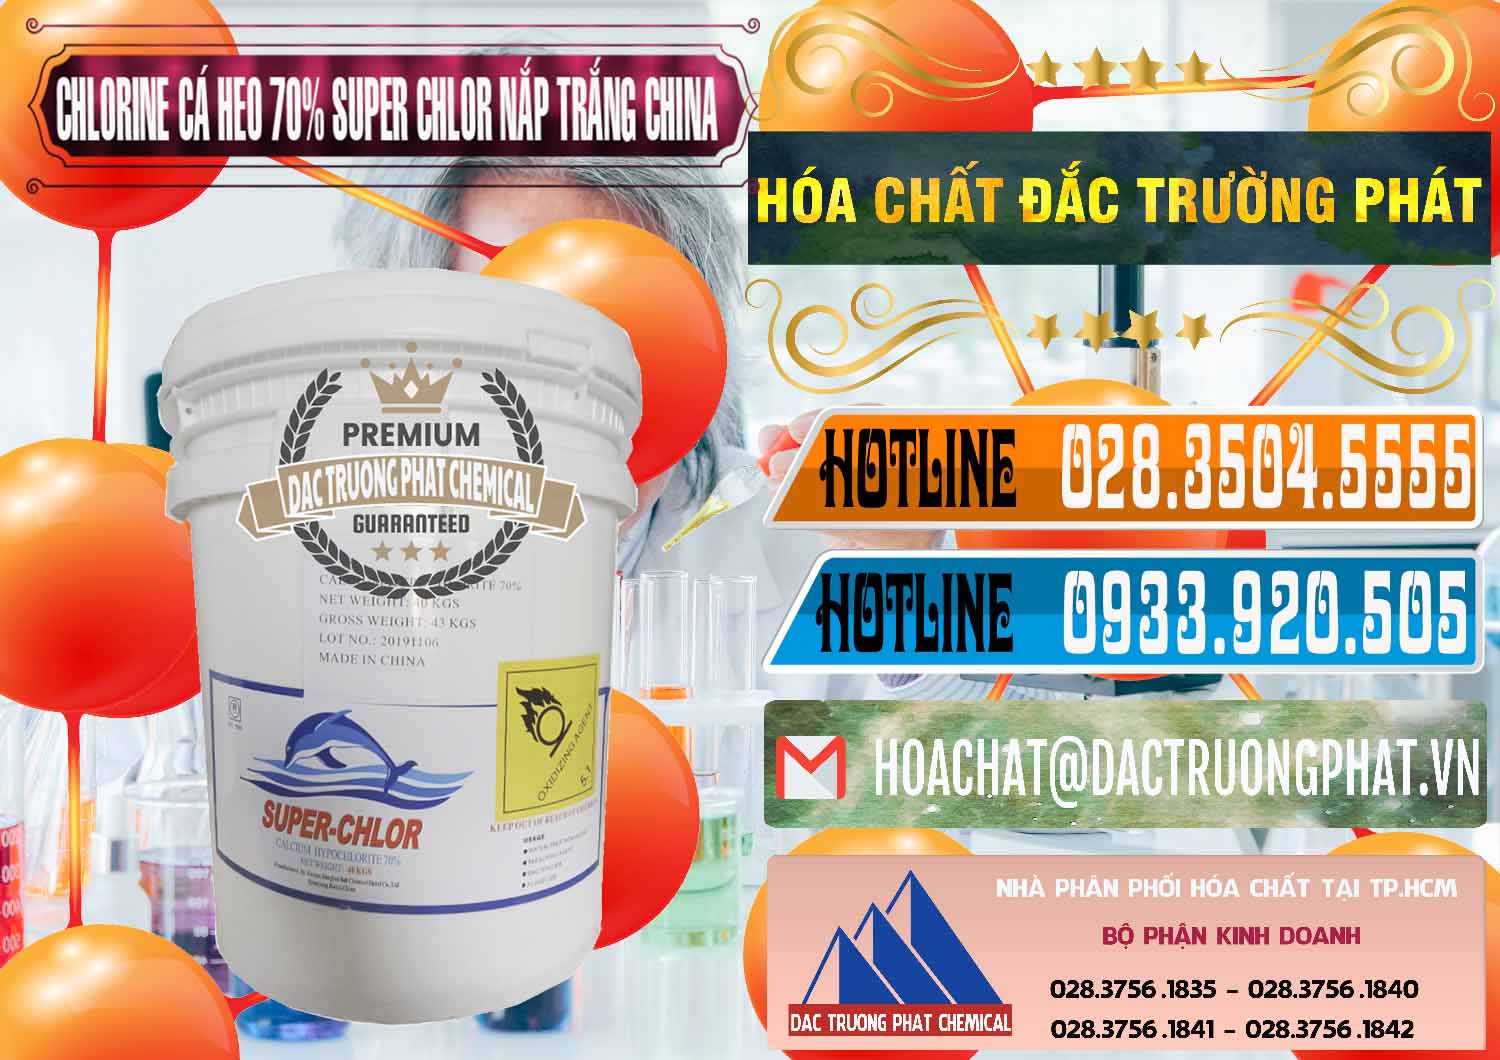 Nơi bán & phân phối Clorin - Chlorine Cá Heo 70% Super Chlor Nắp Trắng Trung Quốc China - 0240 - Phân phối và cung ứng hóa chất tại TP.HCM - stmp.net